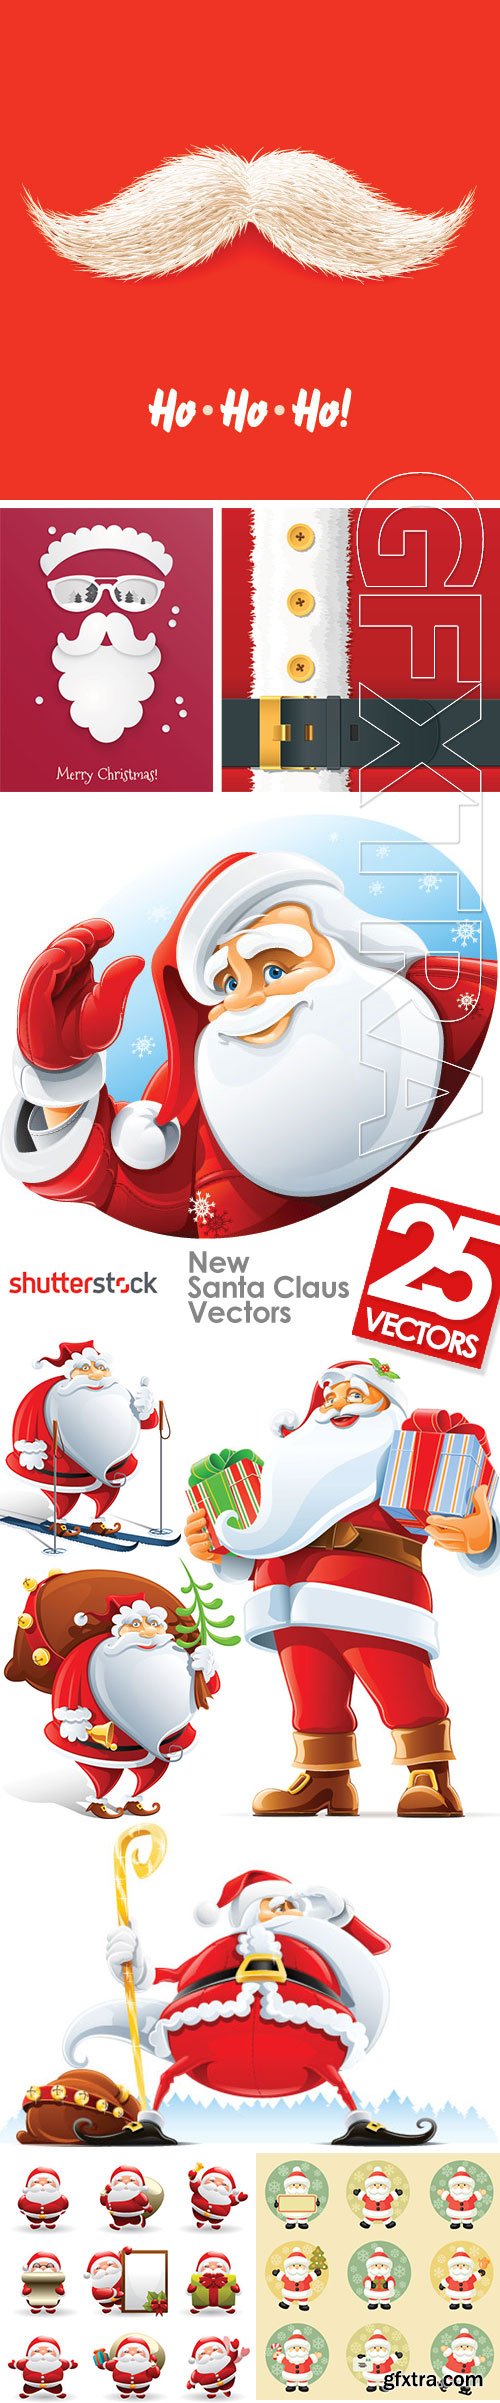 New Santa Claus Vectors 25xEPS